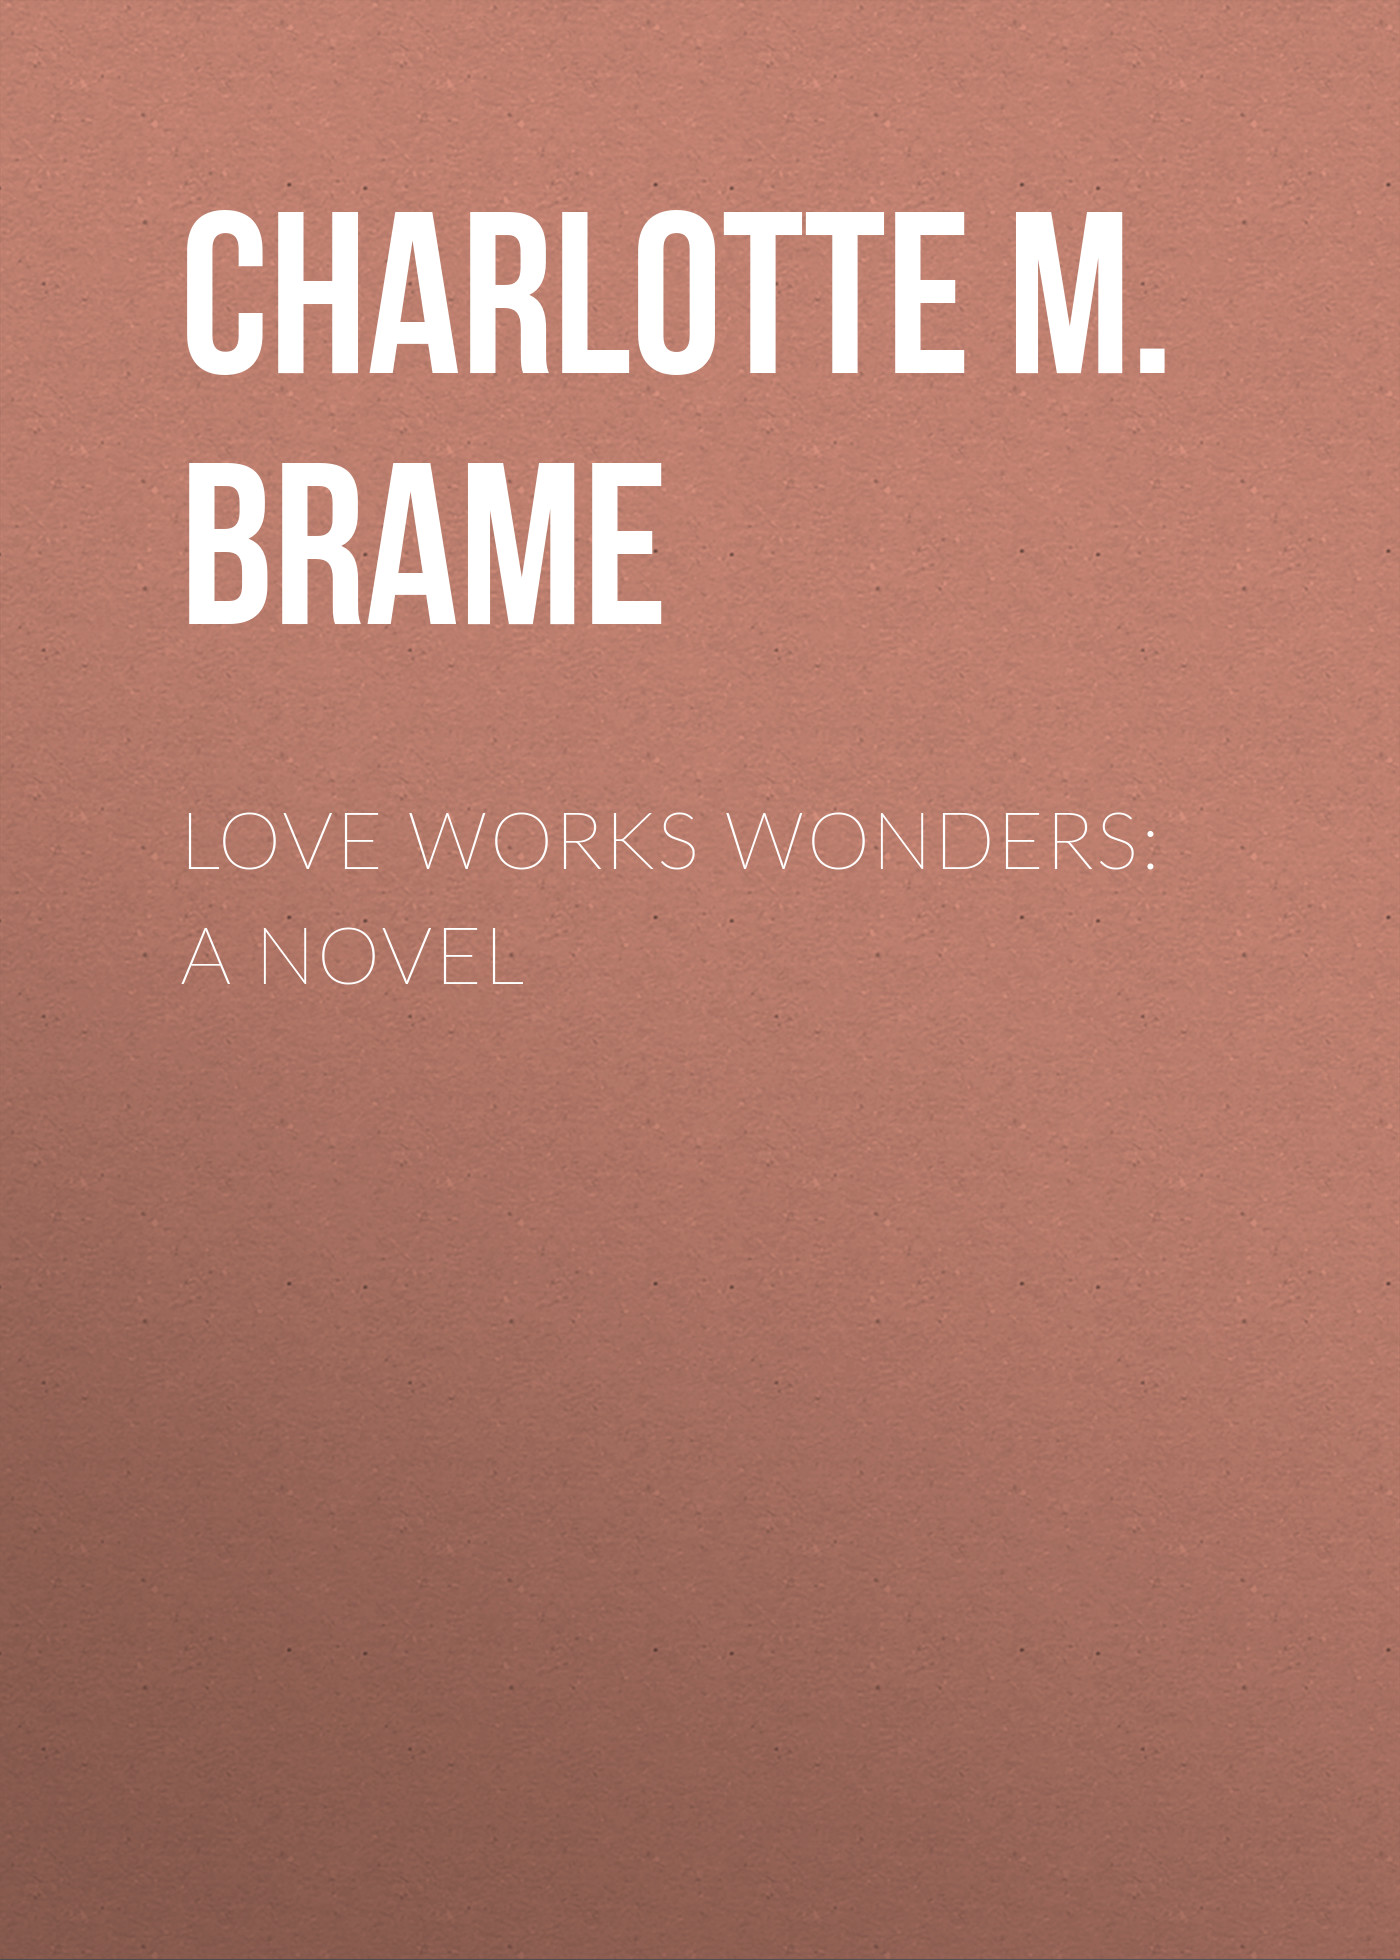 Книга Love Works Wonders: A Novel из серии , созданная Charlotte Brame, может относится к жанру Зарубежная старинная литература, Зарубежная классика. Стоимость электронной книги Love Works Wonders: A Novel с идентификатором 24169548 составляет 0.90 руб.